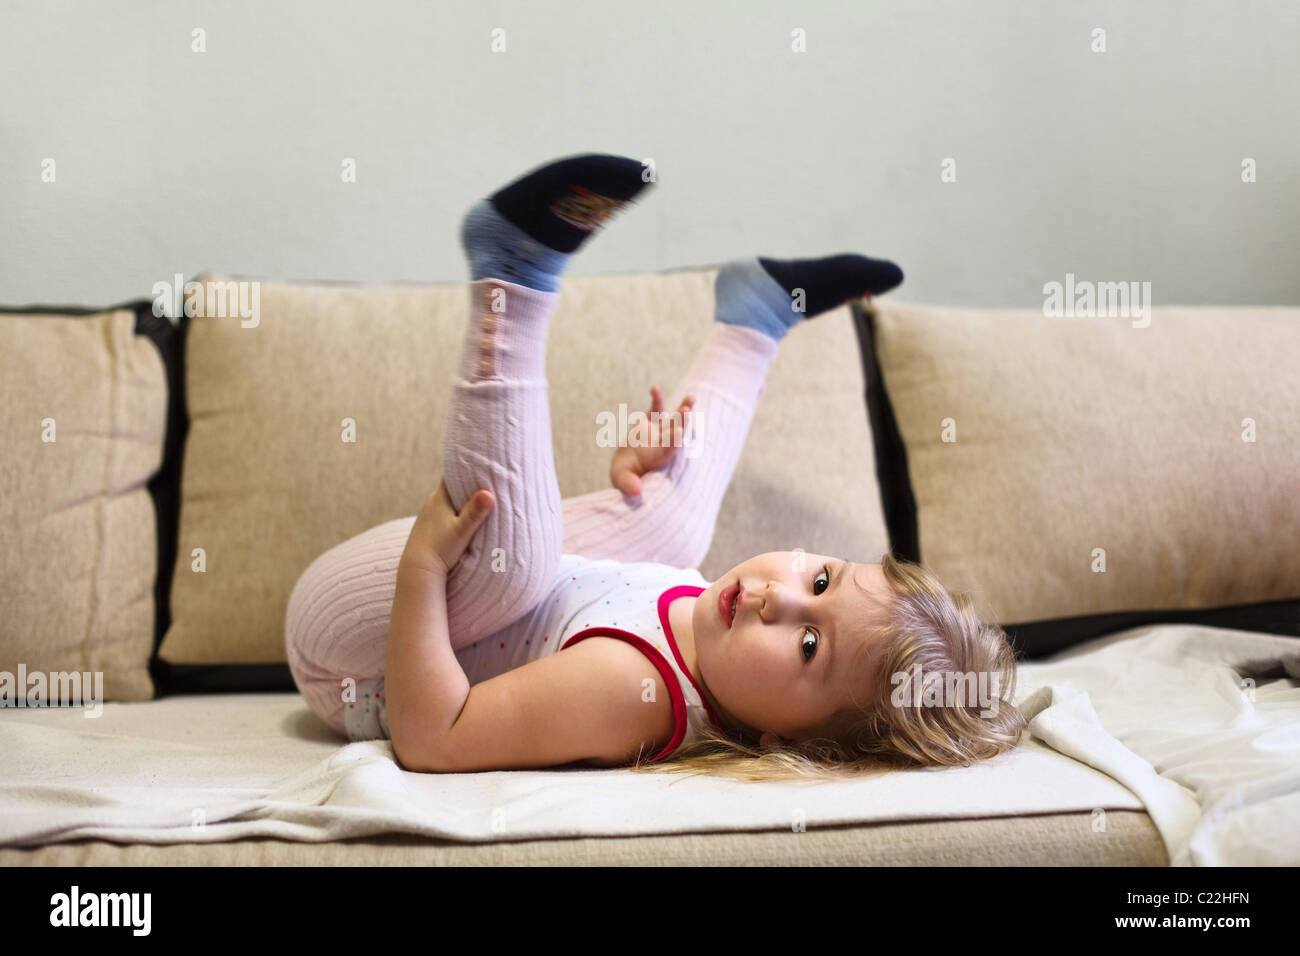 Das russische Mädchen liegt kopfüber auf einer Liege in einem Raum der Wohnung Stockfoto